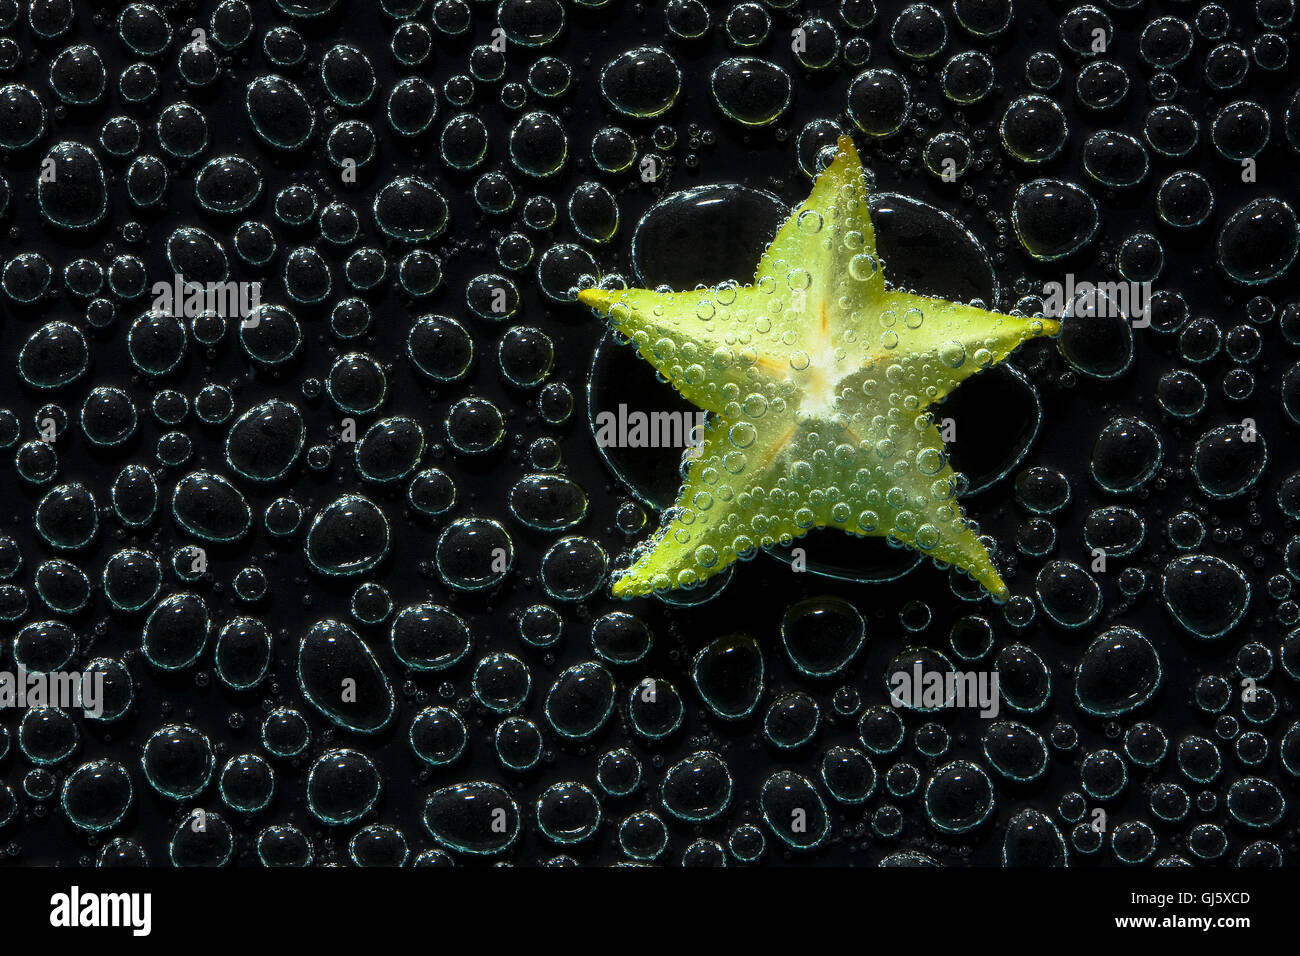 La carambole, star-fruits Fruits dans de l'eau minérale, une série de photos. Close-up de l'eau gazéifiée sur fond noir Banque D'Images